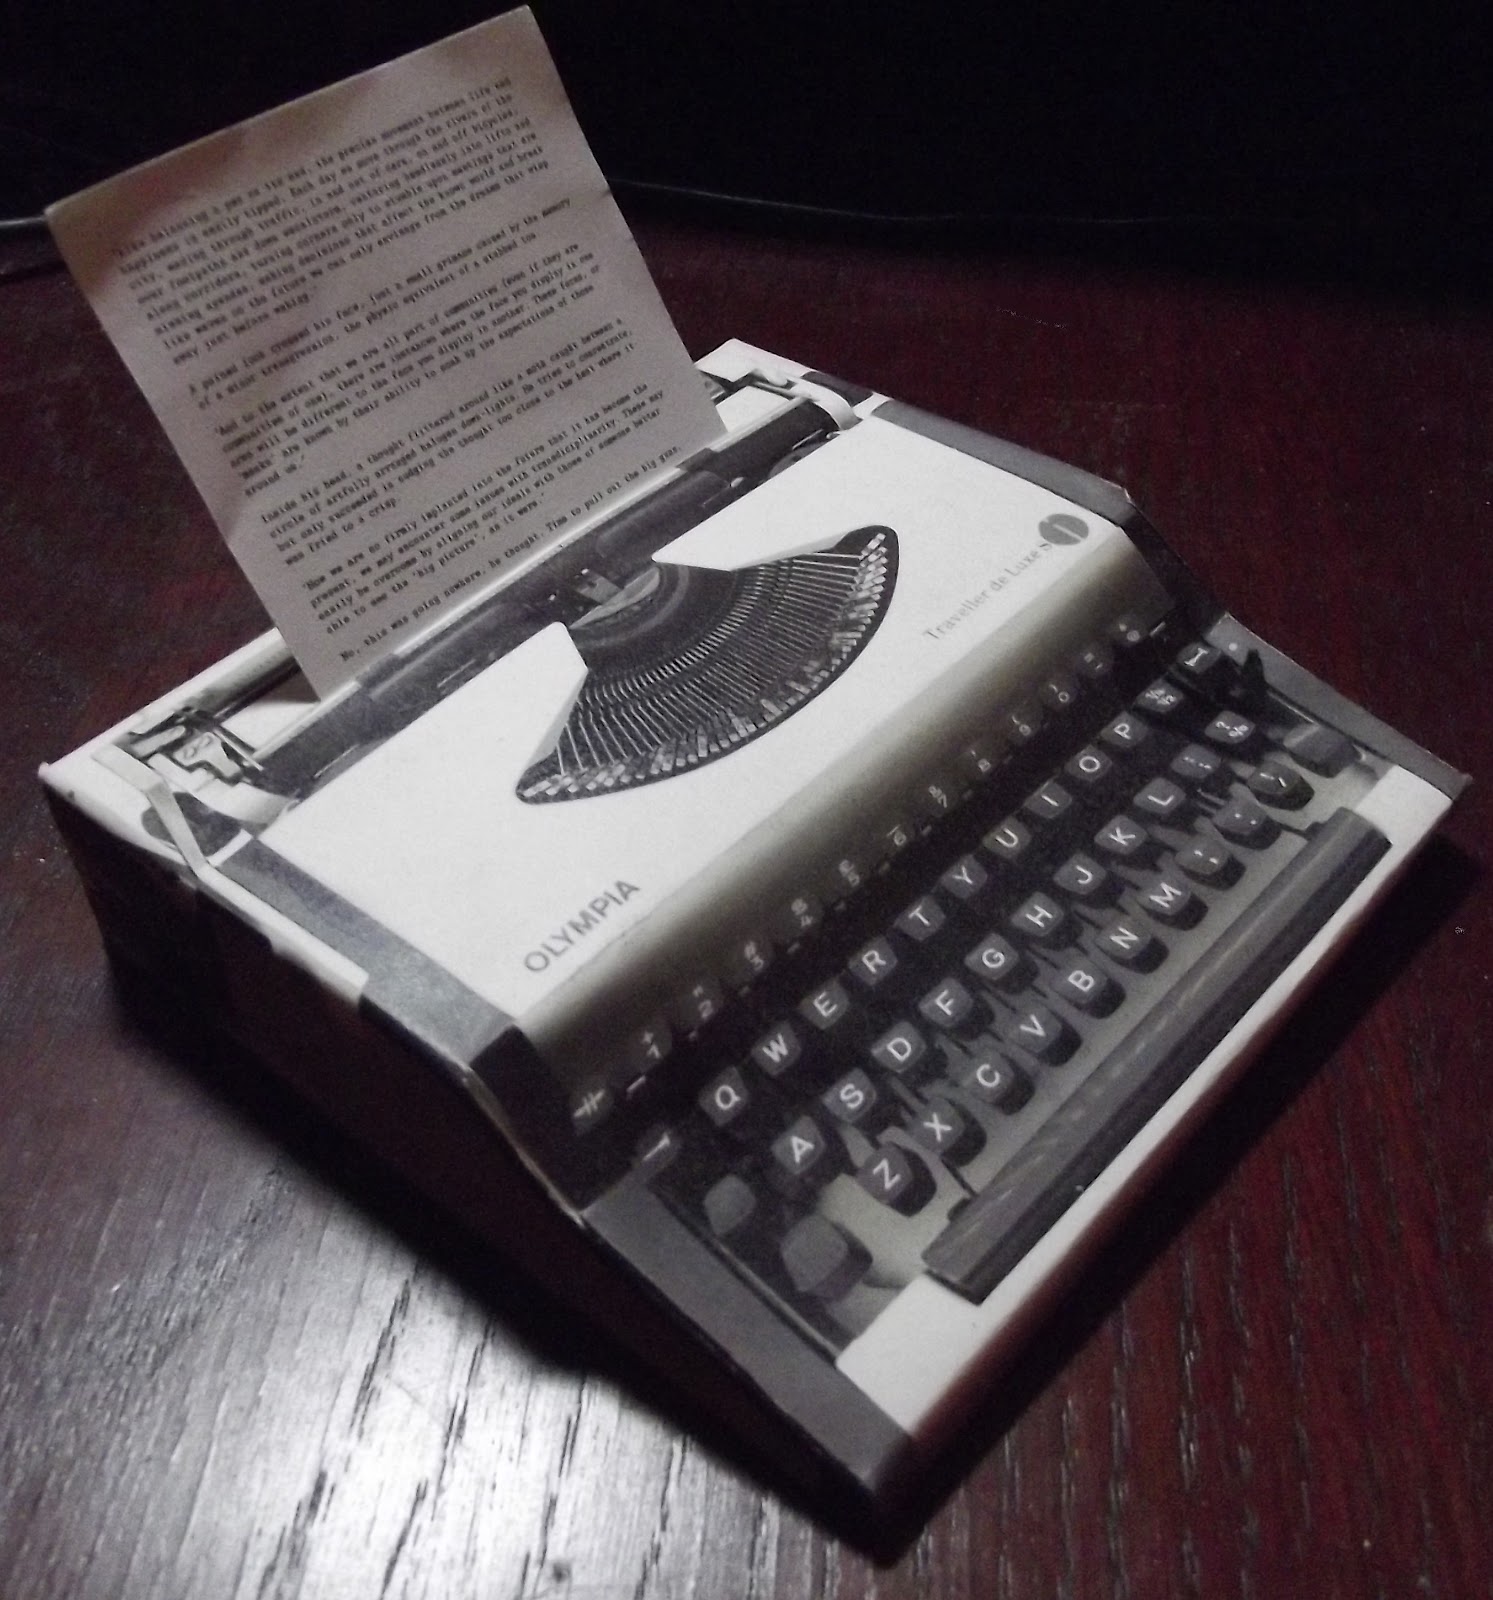 oz.Typewriter: Making Paper Typewriters